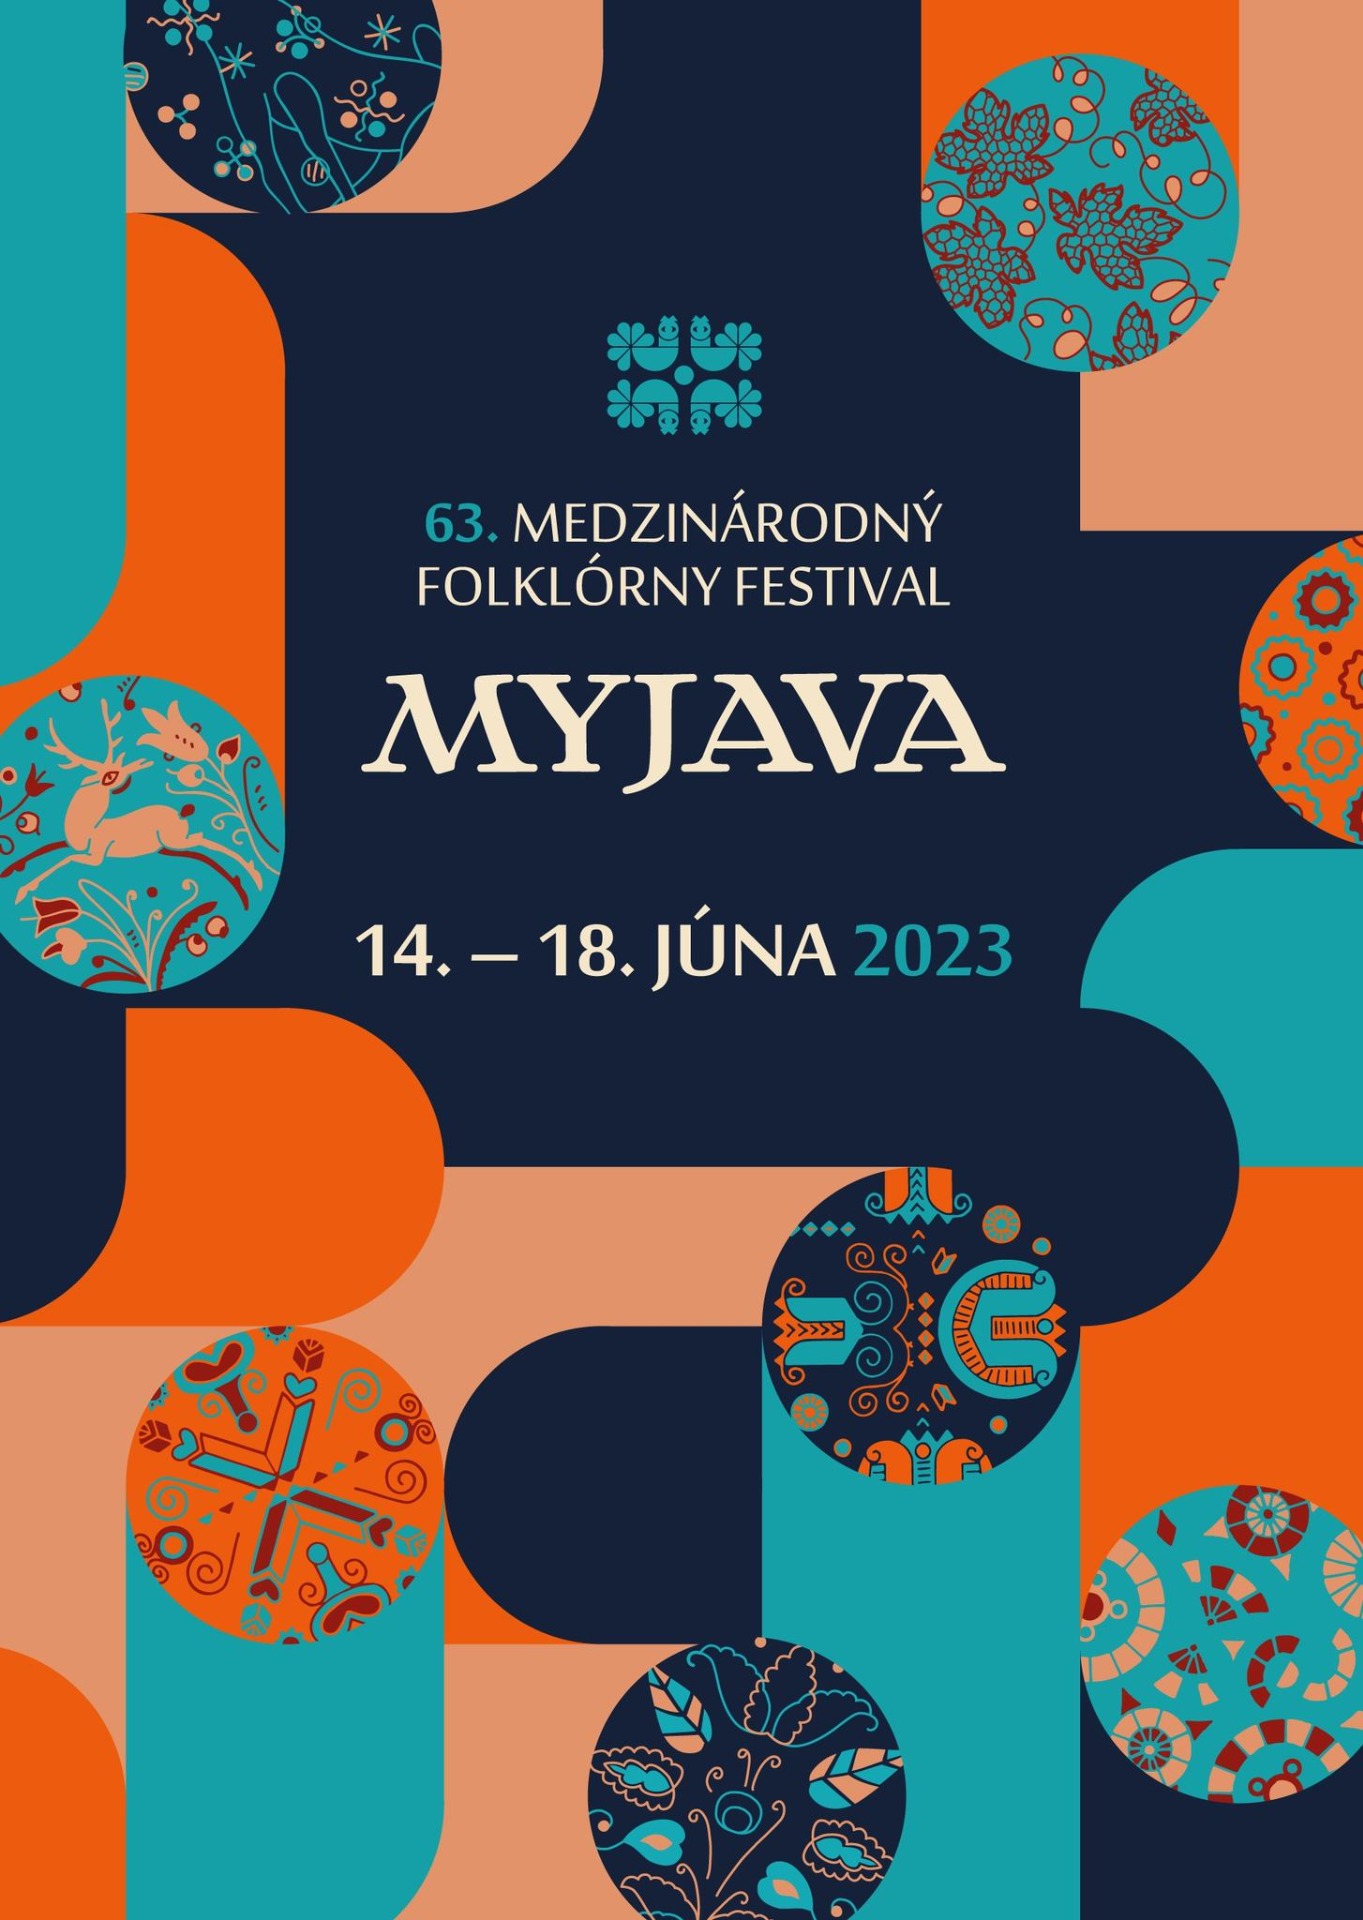 Medzinárodný folklórny festival Myjava 2023